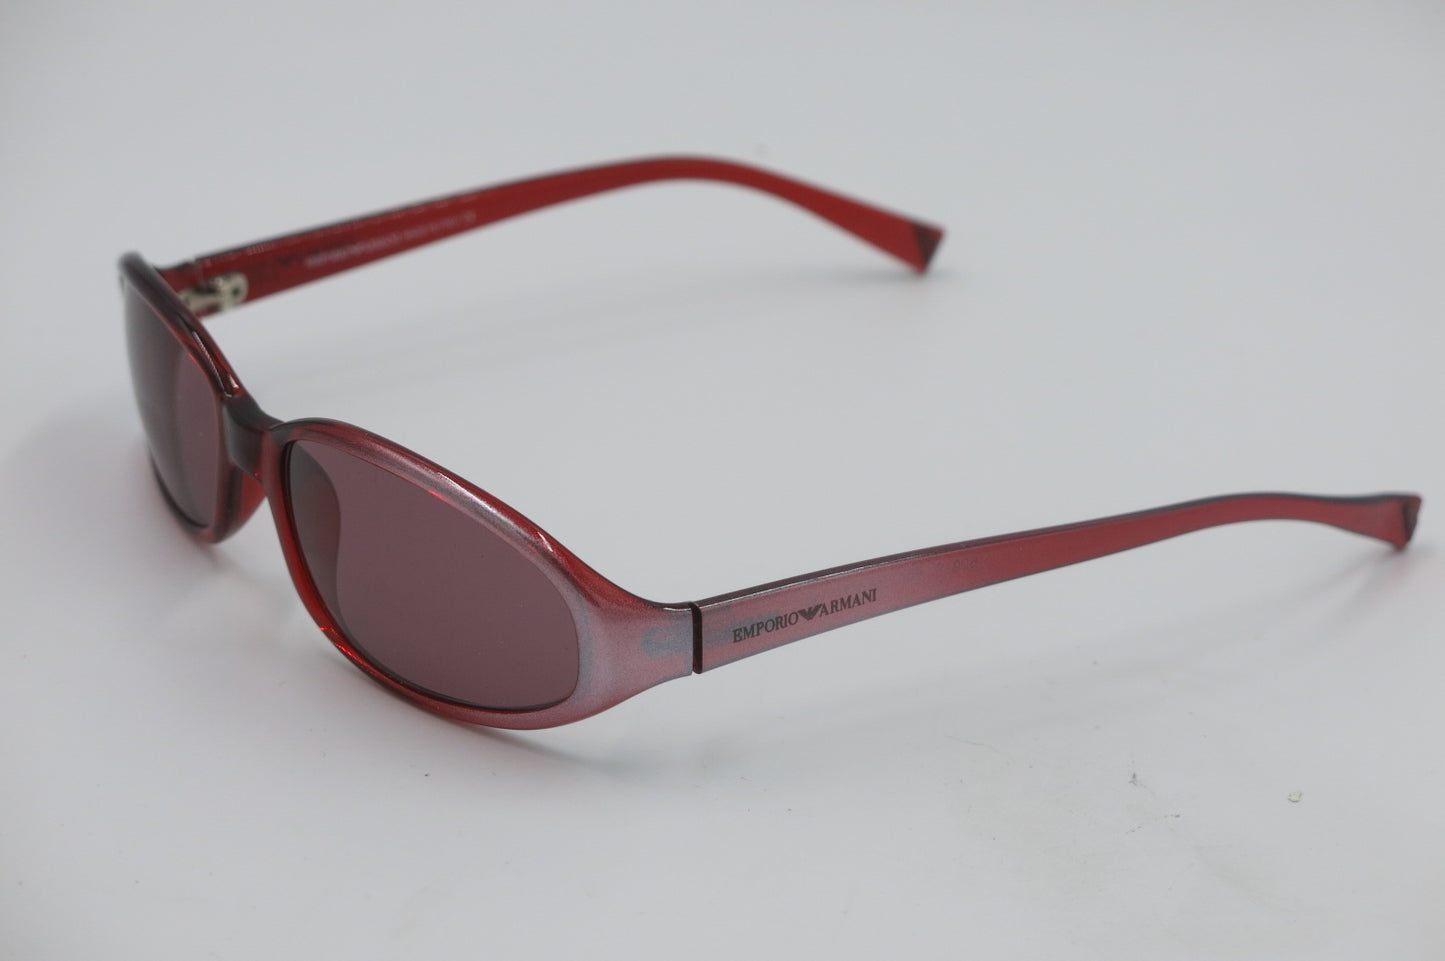 Emporio Armani Sunglasses 629S